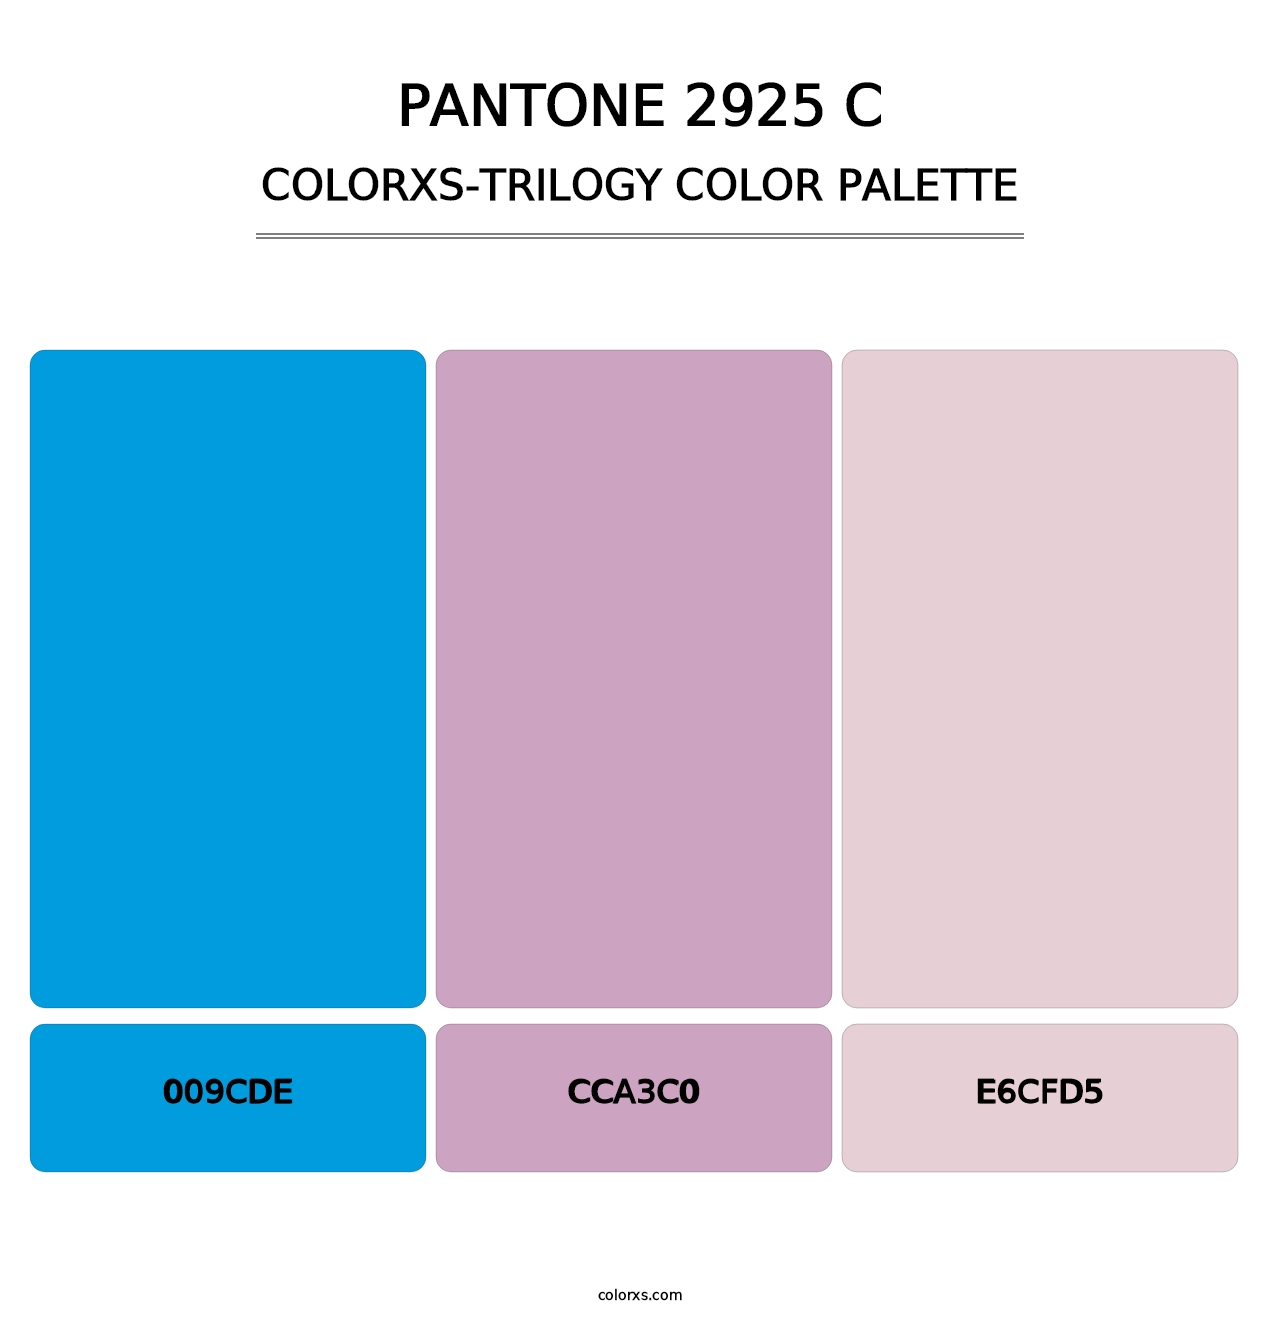 PANTONE 2925 C - Colorxs Trilogy Palette